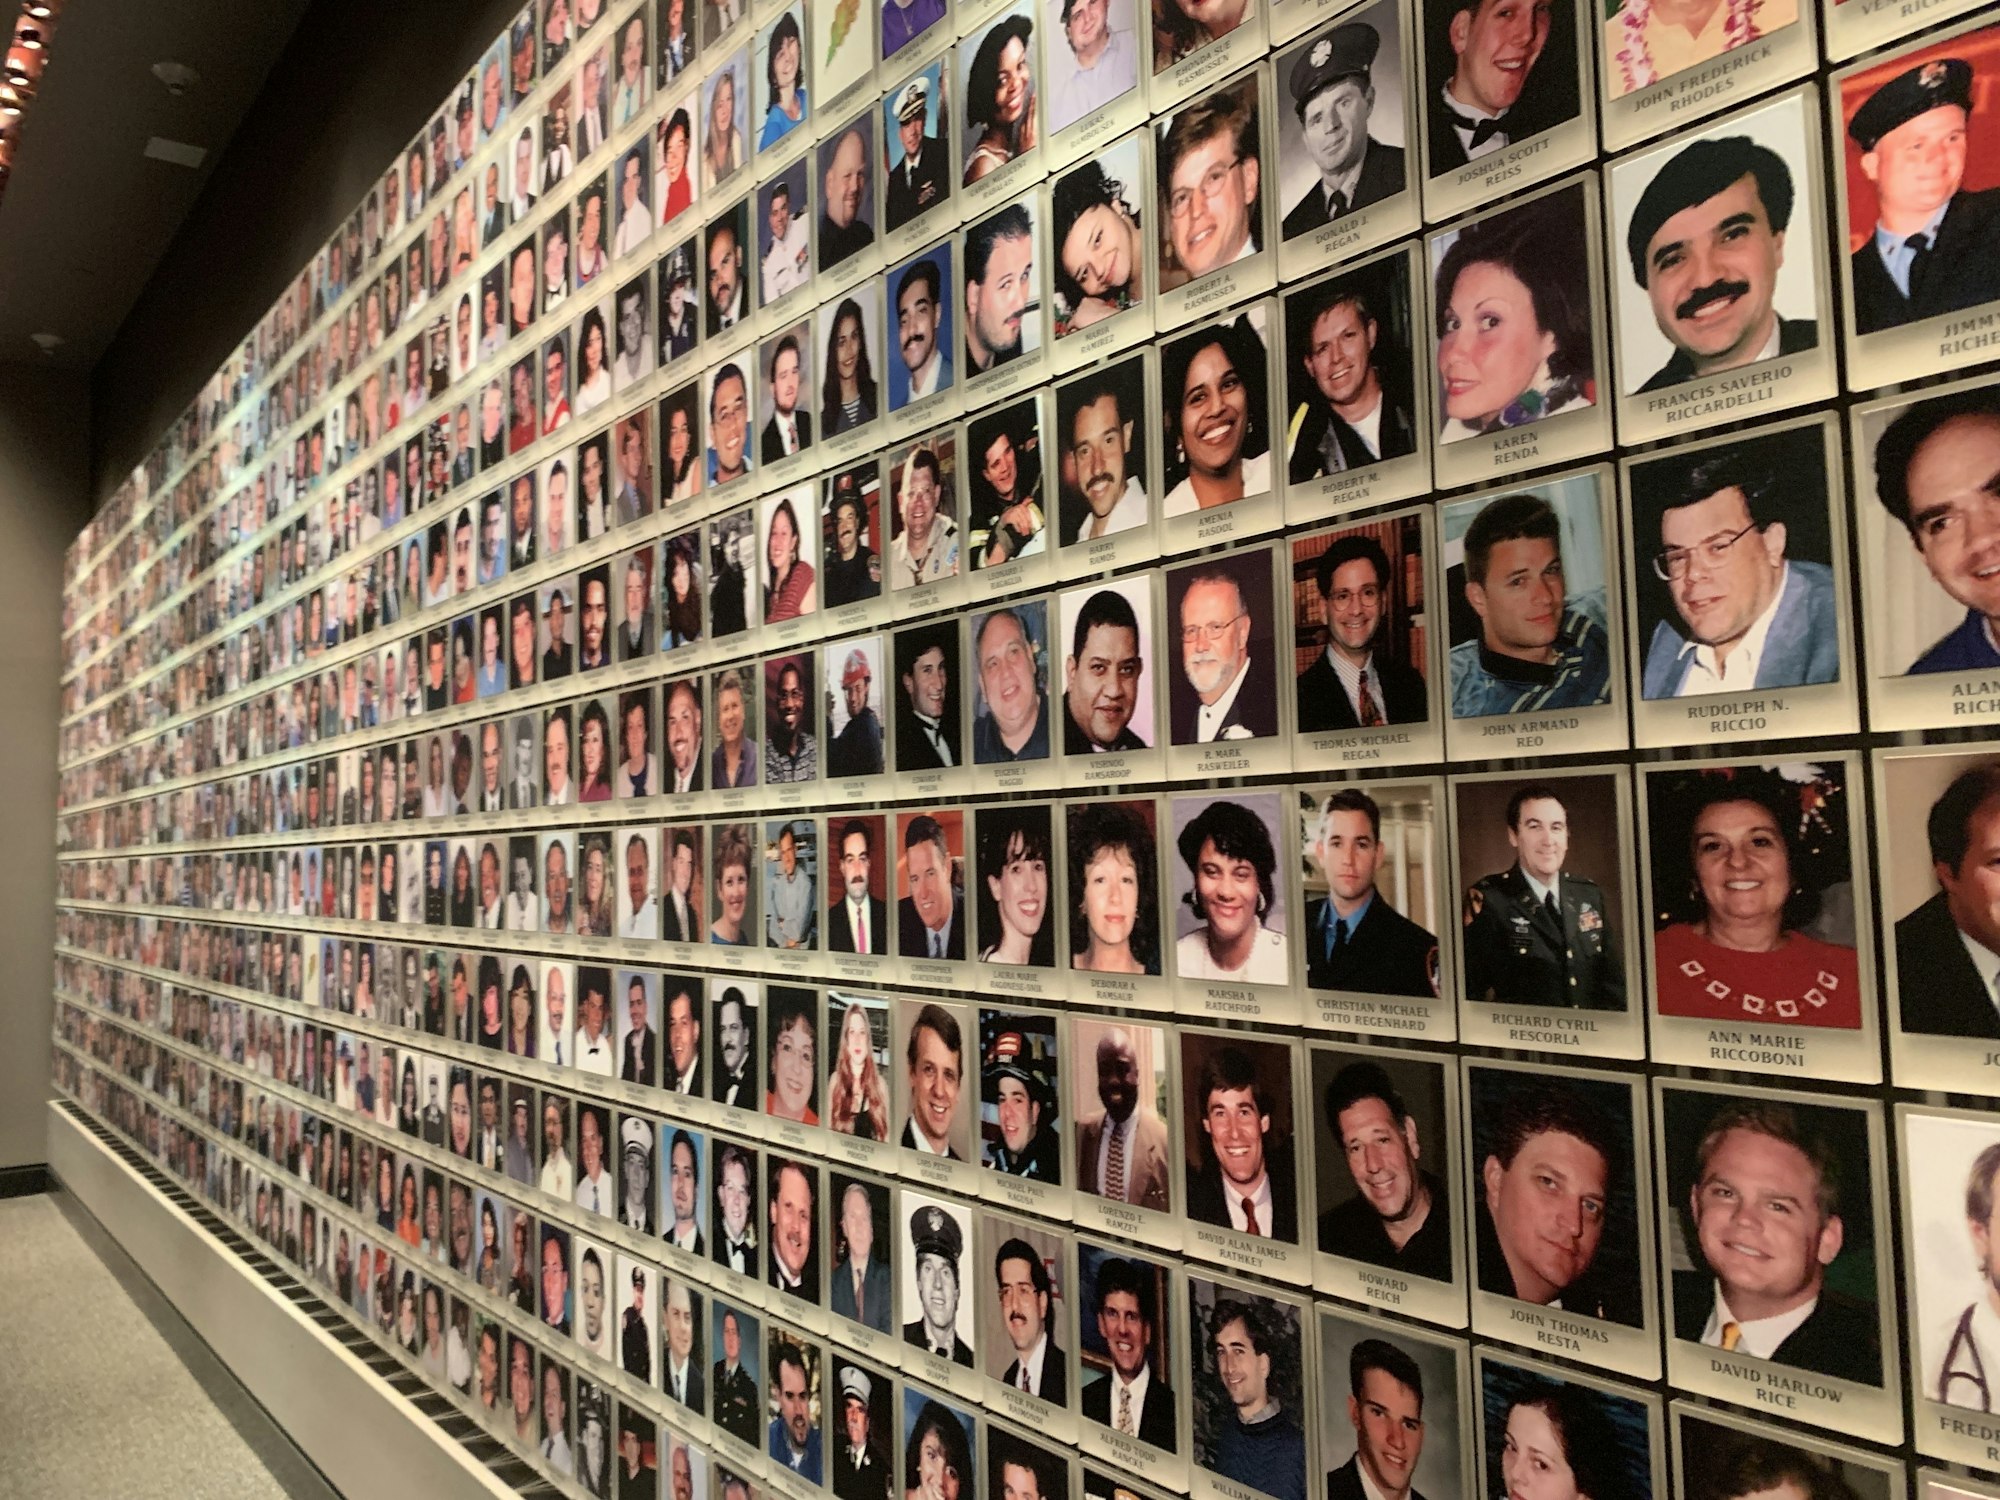 Fotos von Opfern der Anschläge des 11. September hängen im Gedenkraum des 9/11 Museums.